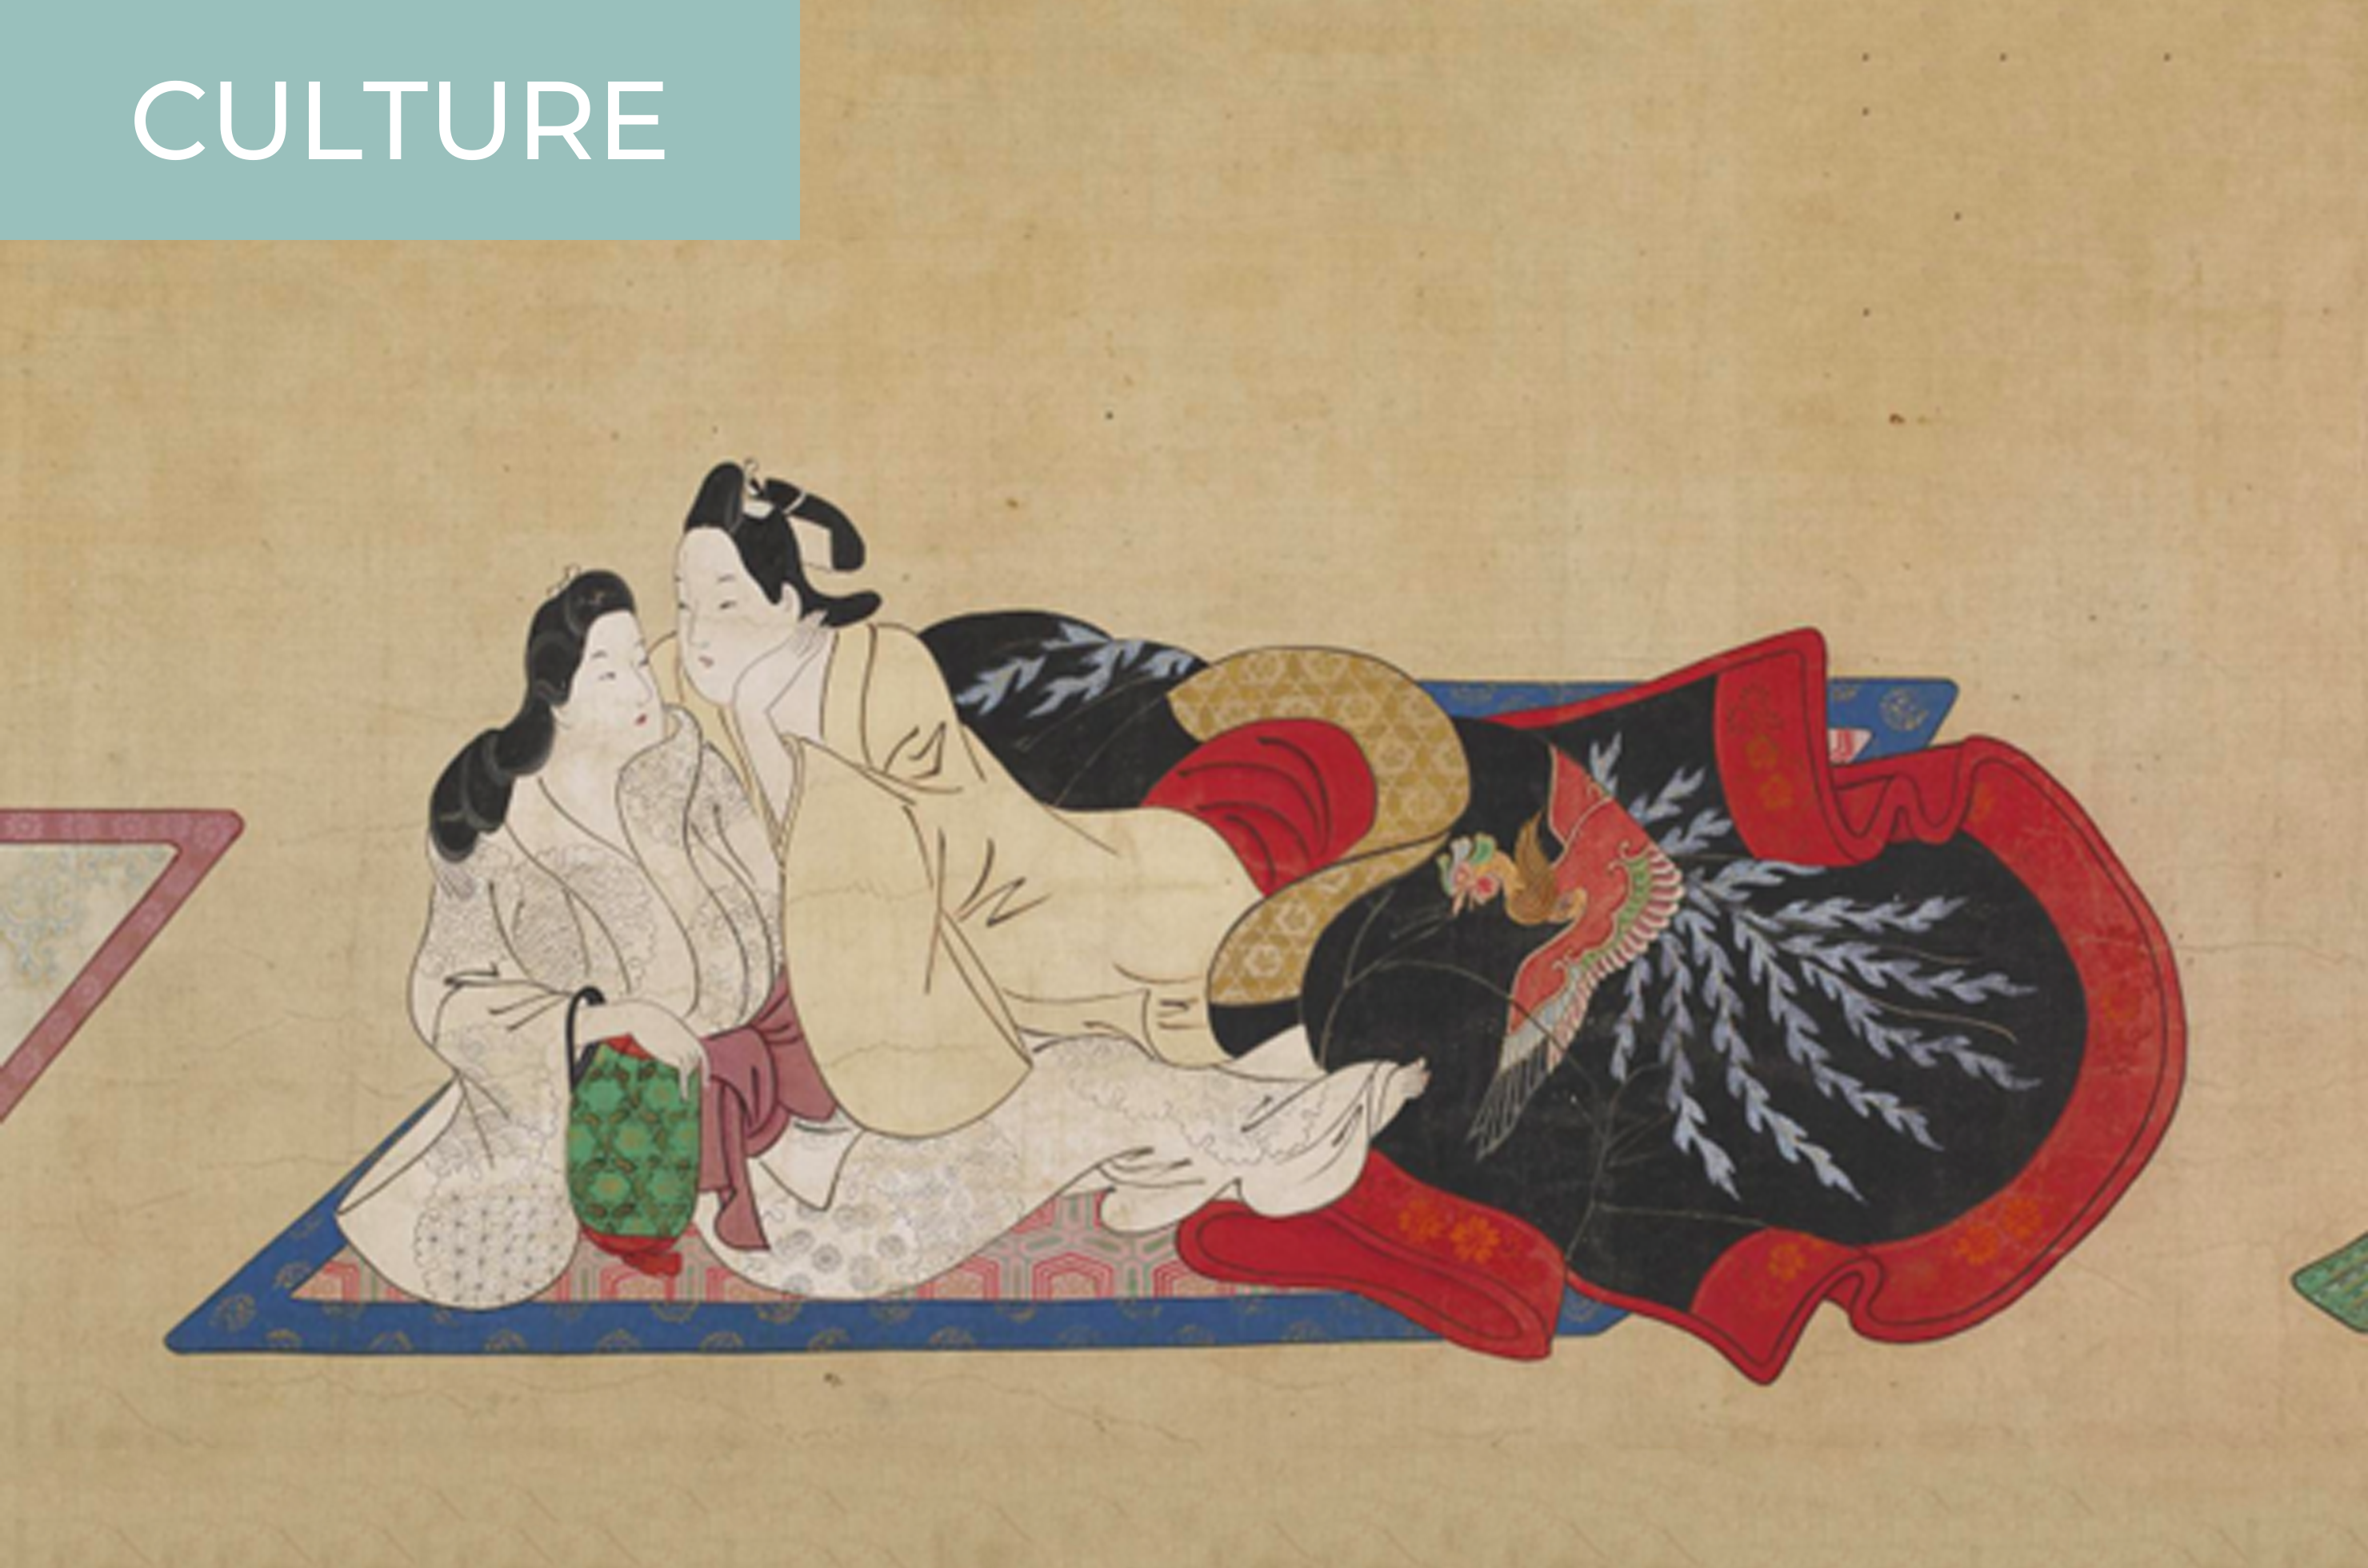 2960px x 1960px - Shunga: Ancient Japanese Pornography, or Something Else? - Kokoro Media